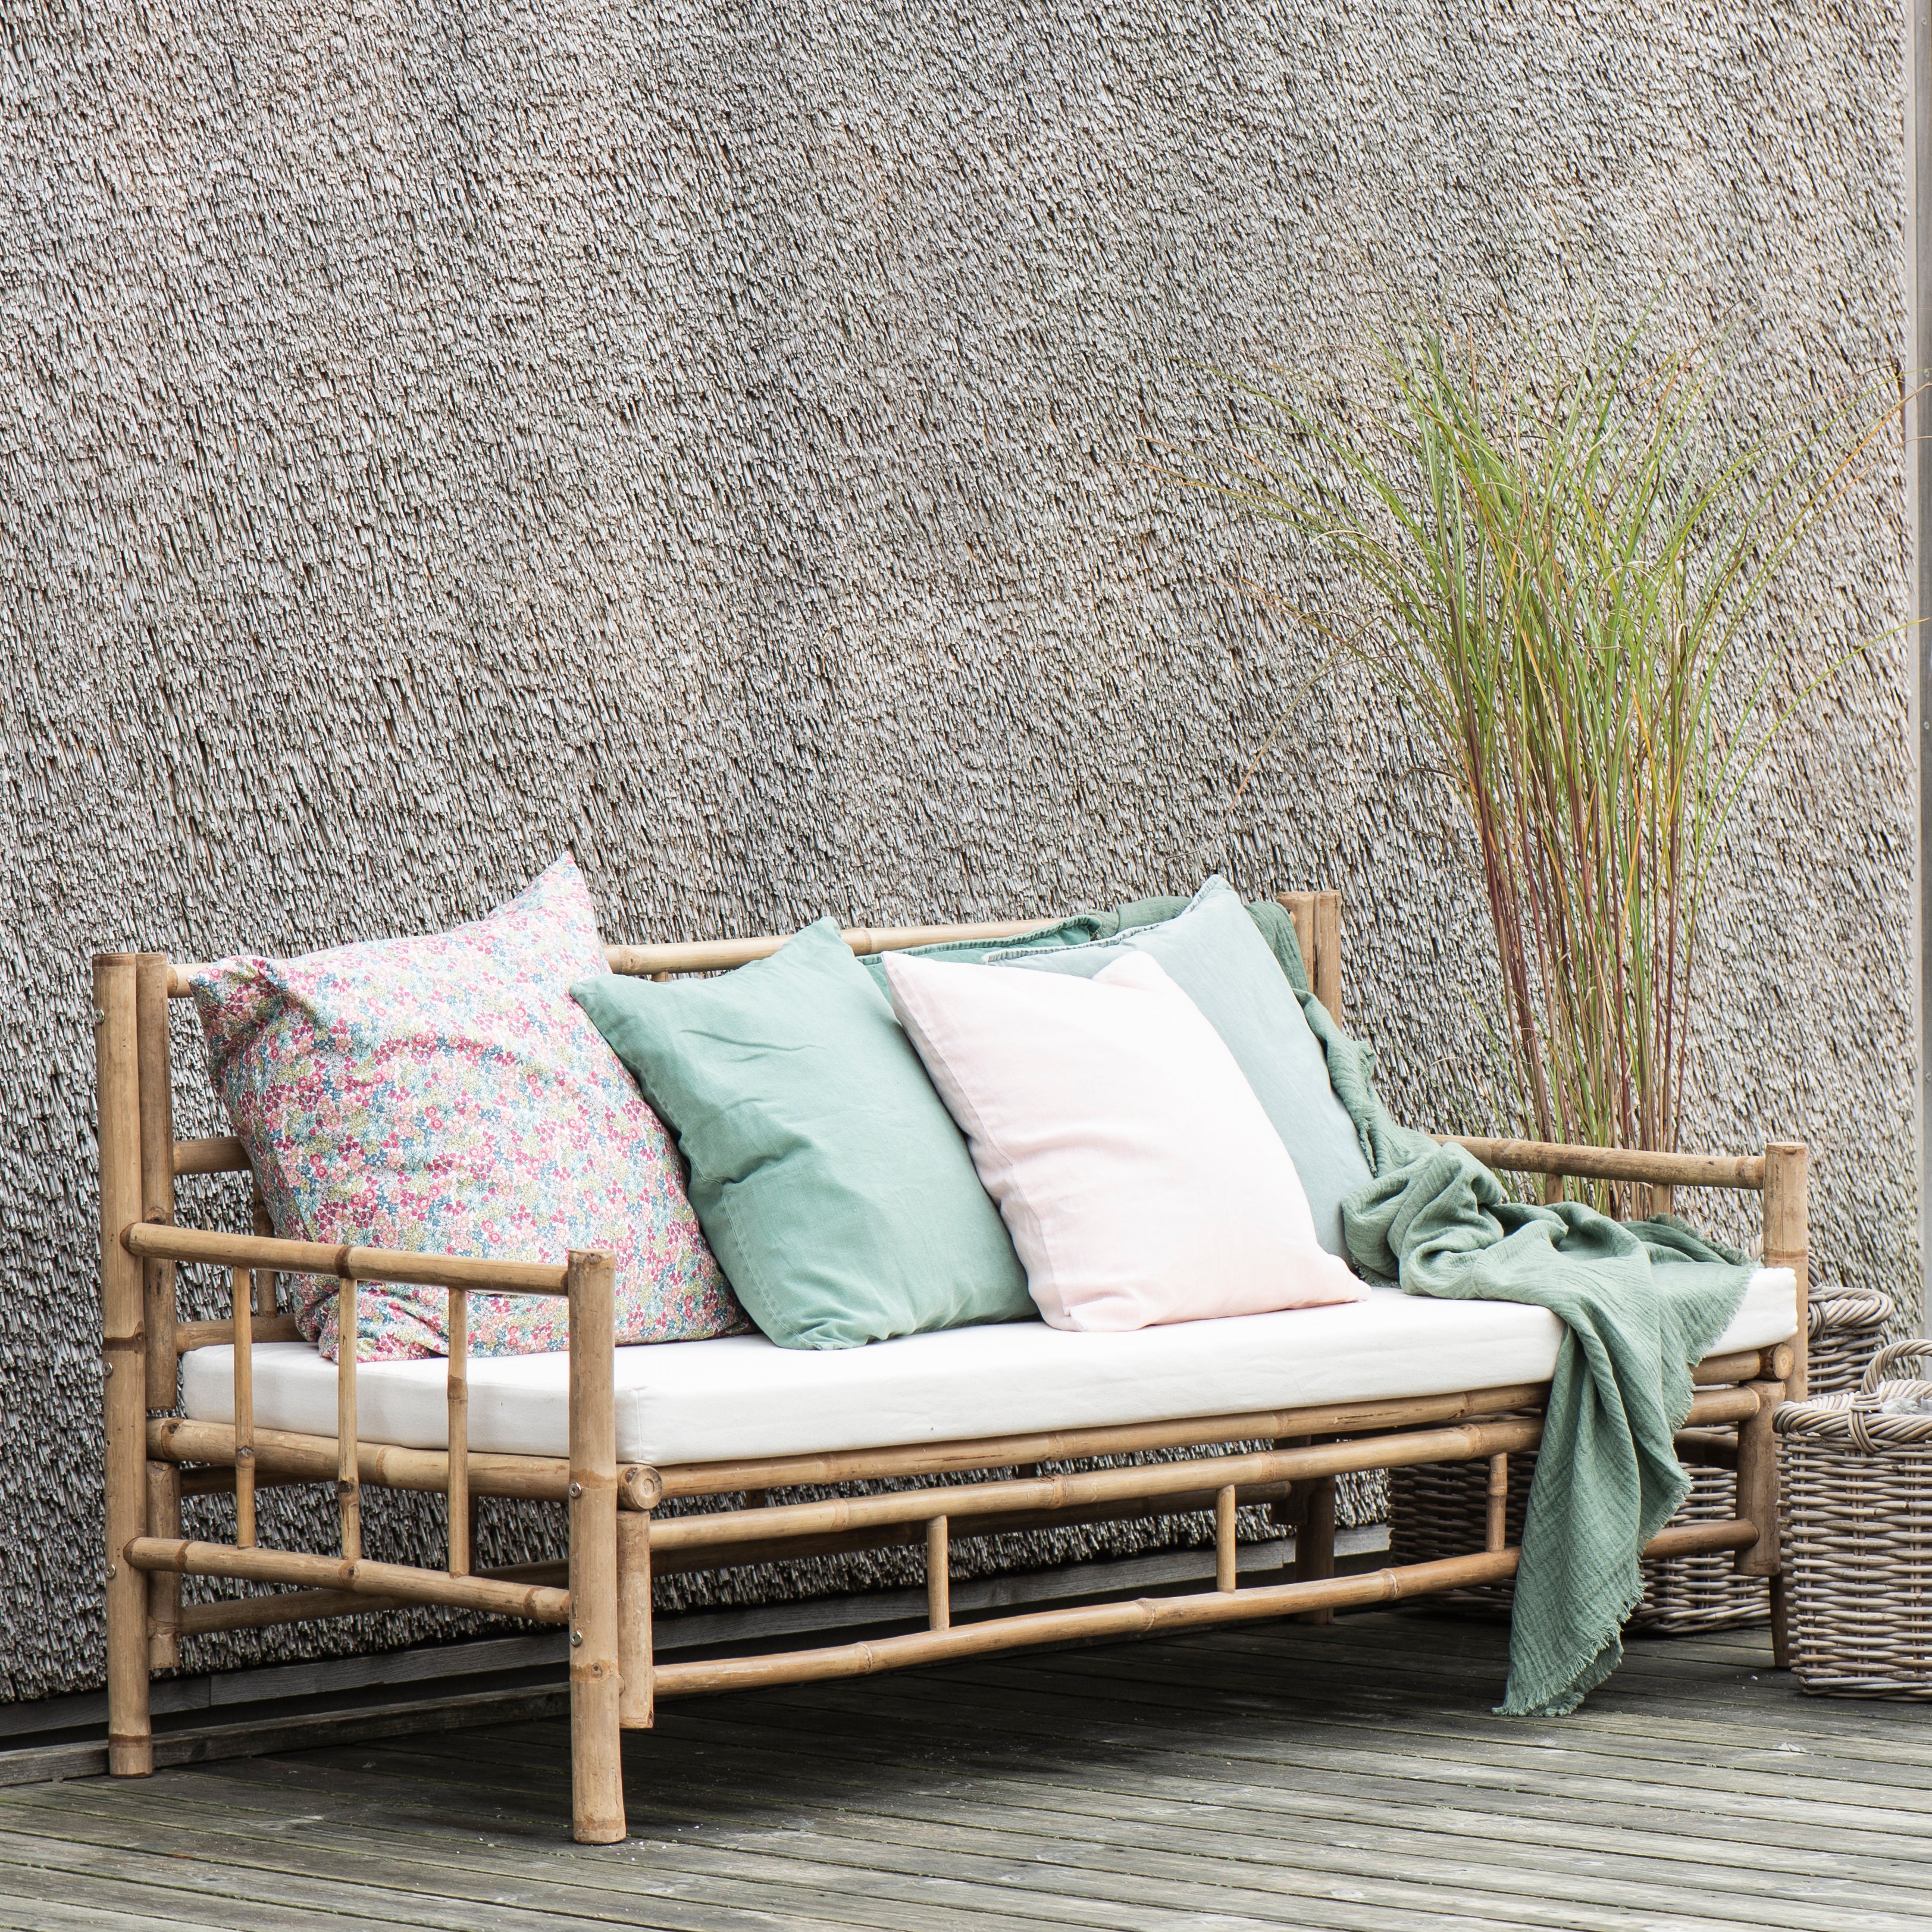 Bambus sofa med puder og tæppe på terassen.  Bambus sofaen kan bruges som loungesæt inde og ude.